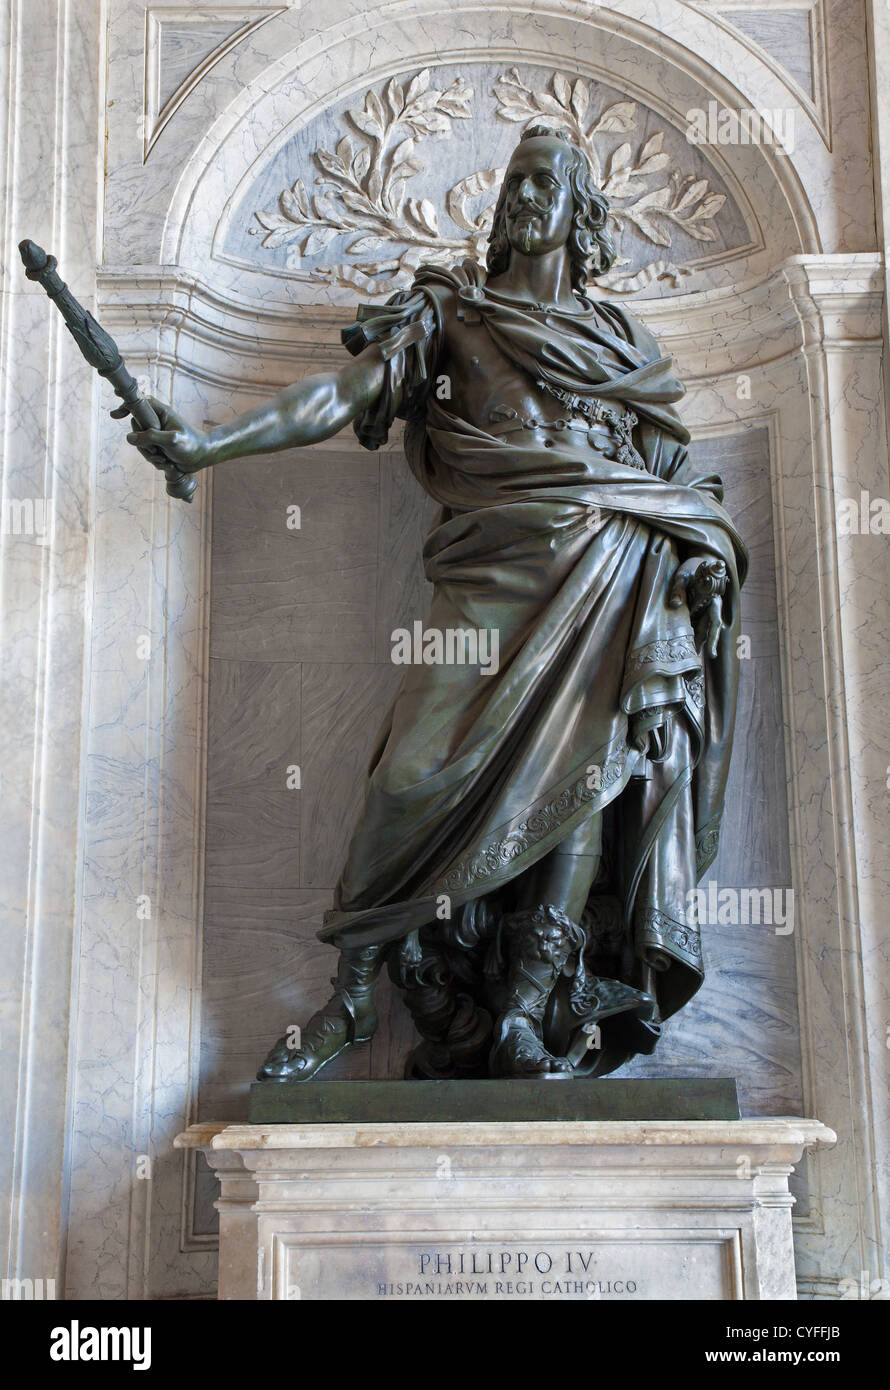 ROME, ITALY - MARCH 22, 2012: Bronze statue of French emperor Philipe IV designed in 1665 by Rainaldi in vestibule of Basilica Santa Maria Maggiore Stock Photo